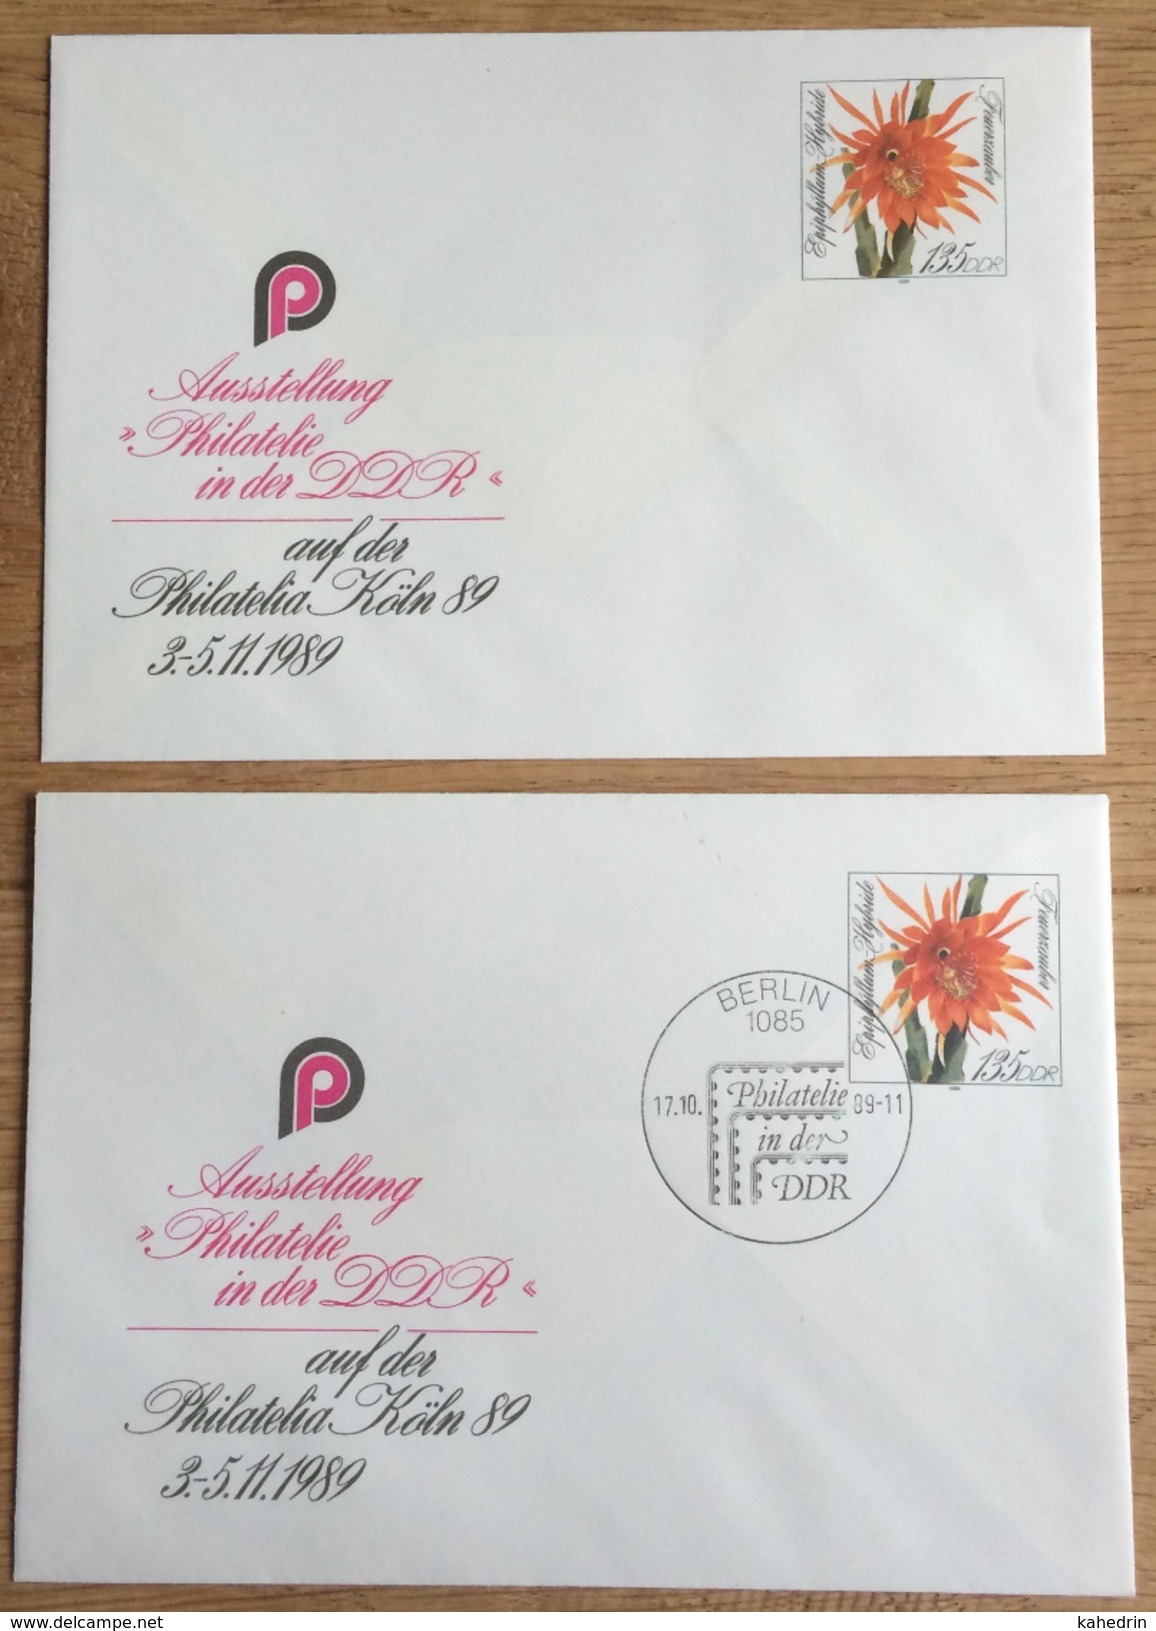 DDR 1989, Berlin 1085, 2 Covers, Special Cancel: Philatelie, Philatelia, Cactus Feuerzauber Hybride Flower ** / (o) - Umschläge - Gebraucht